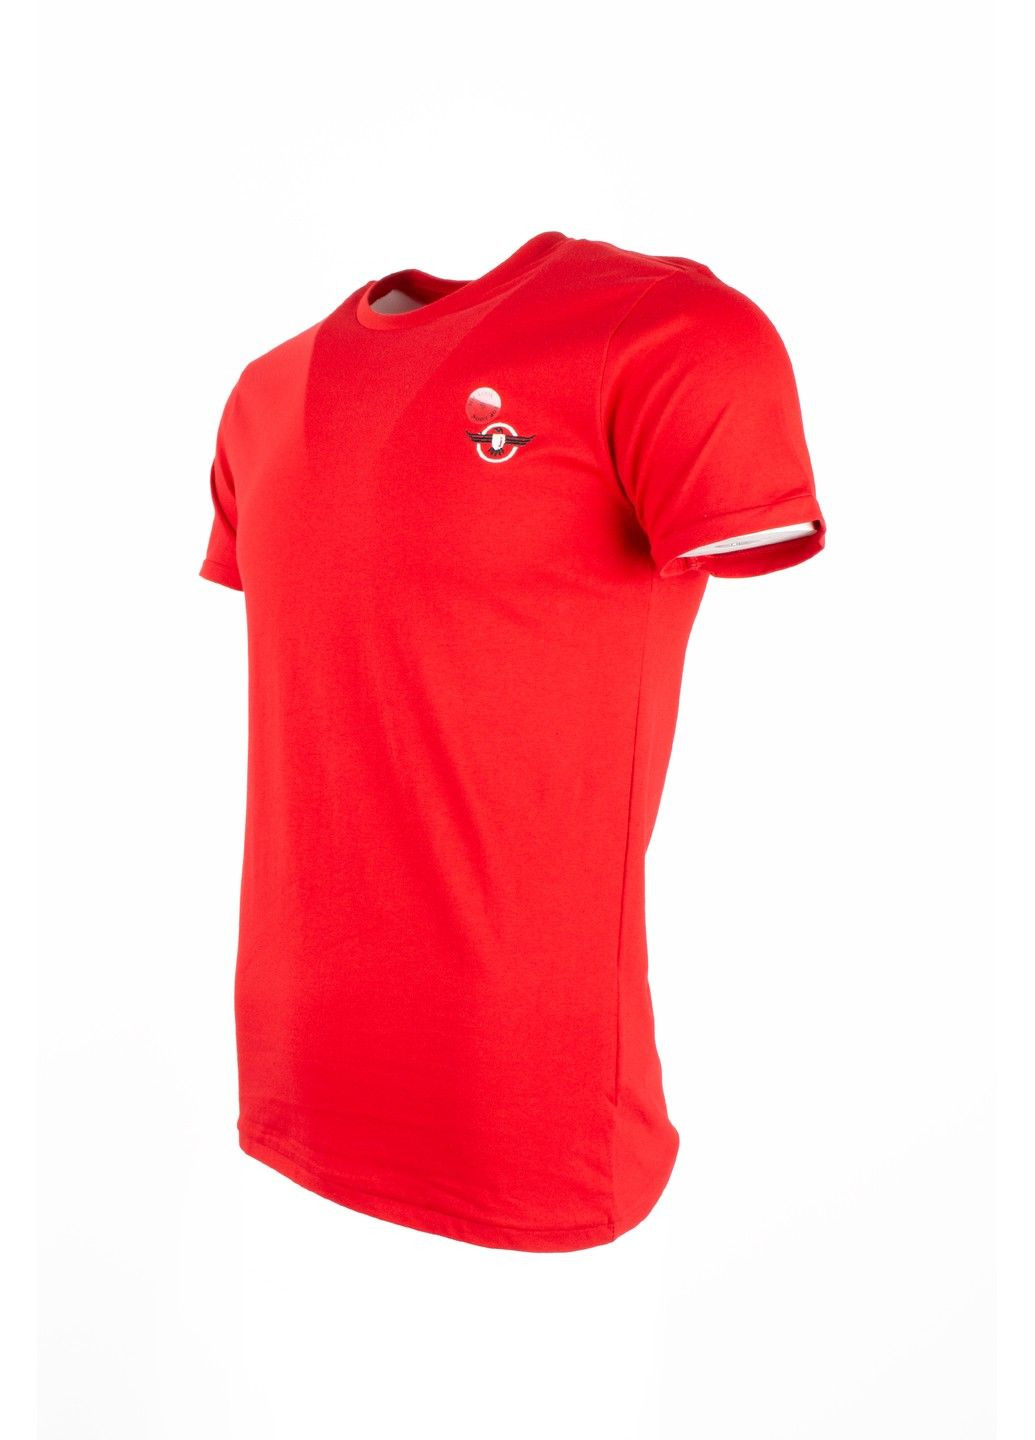 Красная футболка мужская top look красная 070821-001527 No Brand